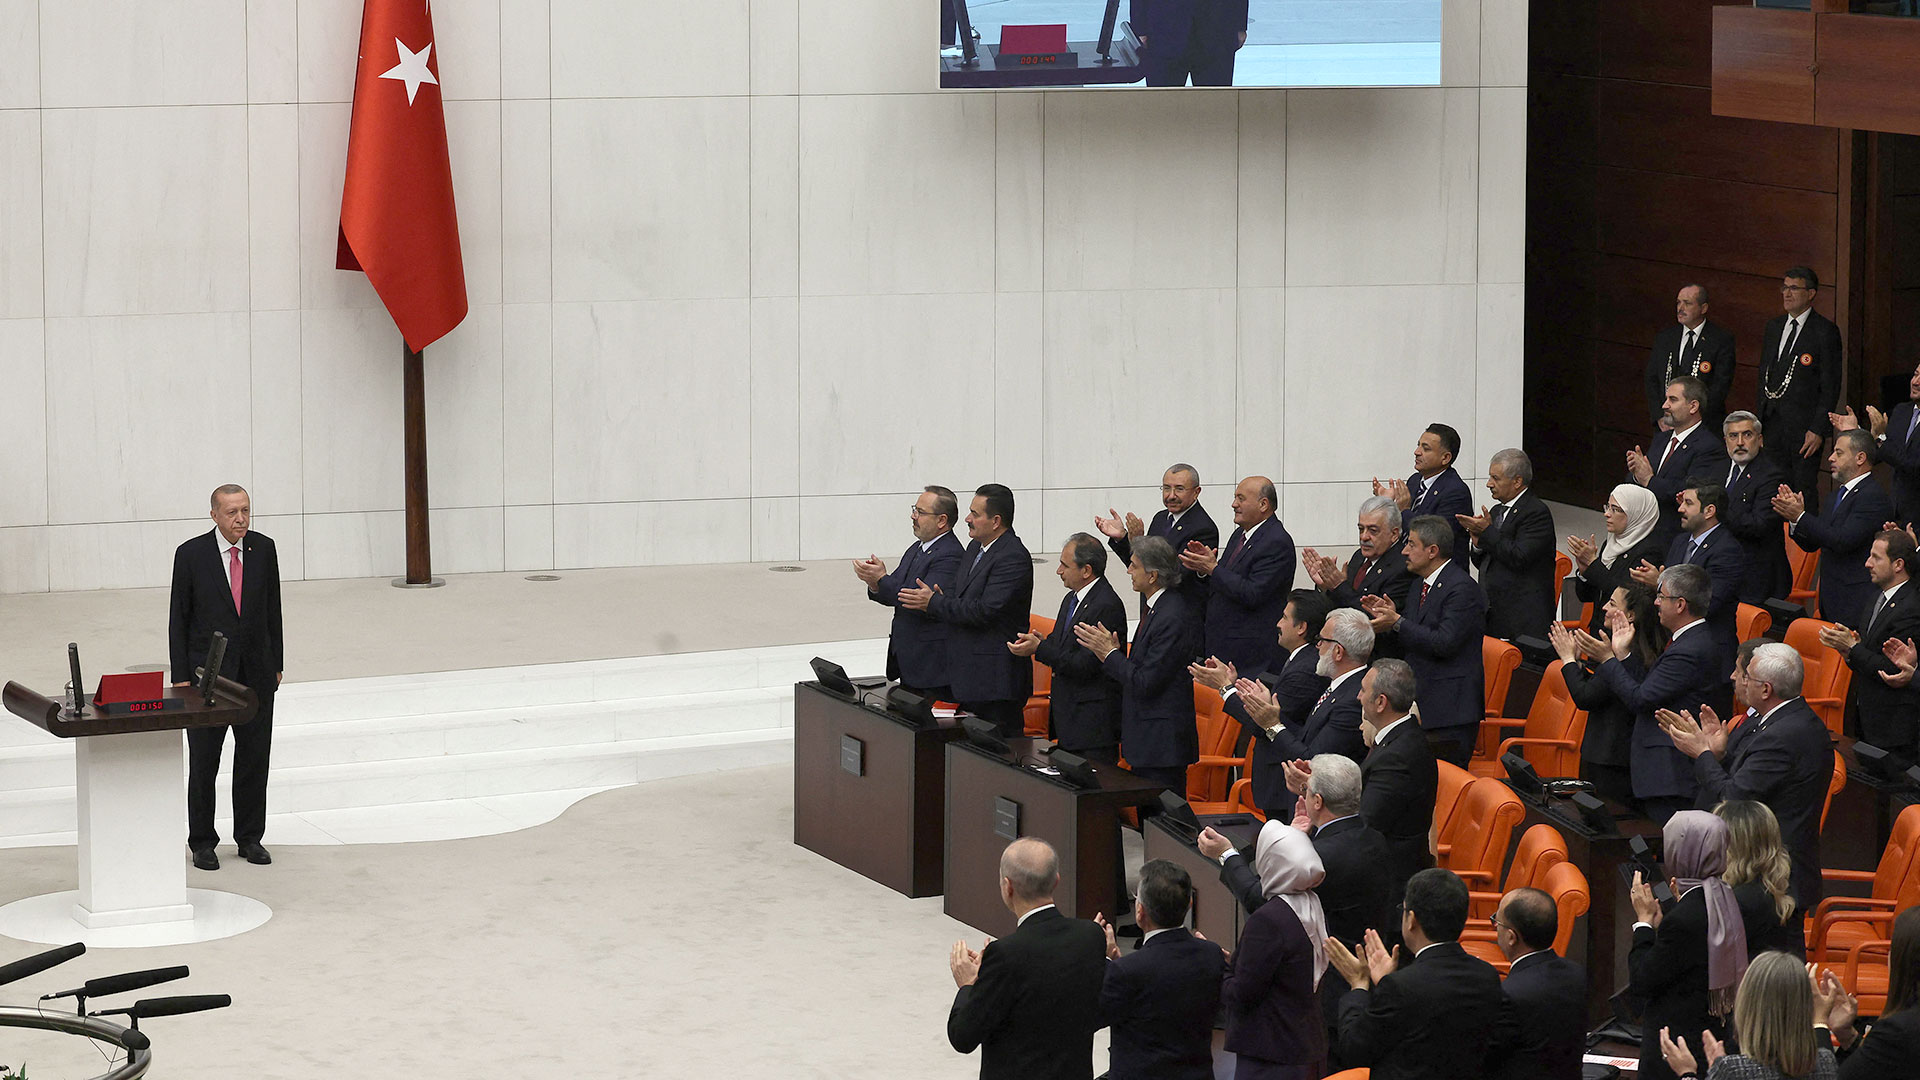 El presidente turco, Recep Tayyip Erdogan, en el poder desde hace 20 años, empezó este sábado su tercer mandato (Adem ALTAN/AFP)